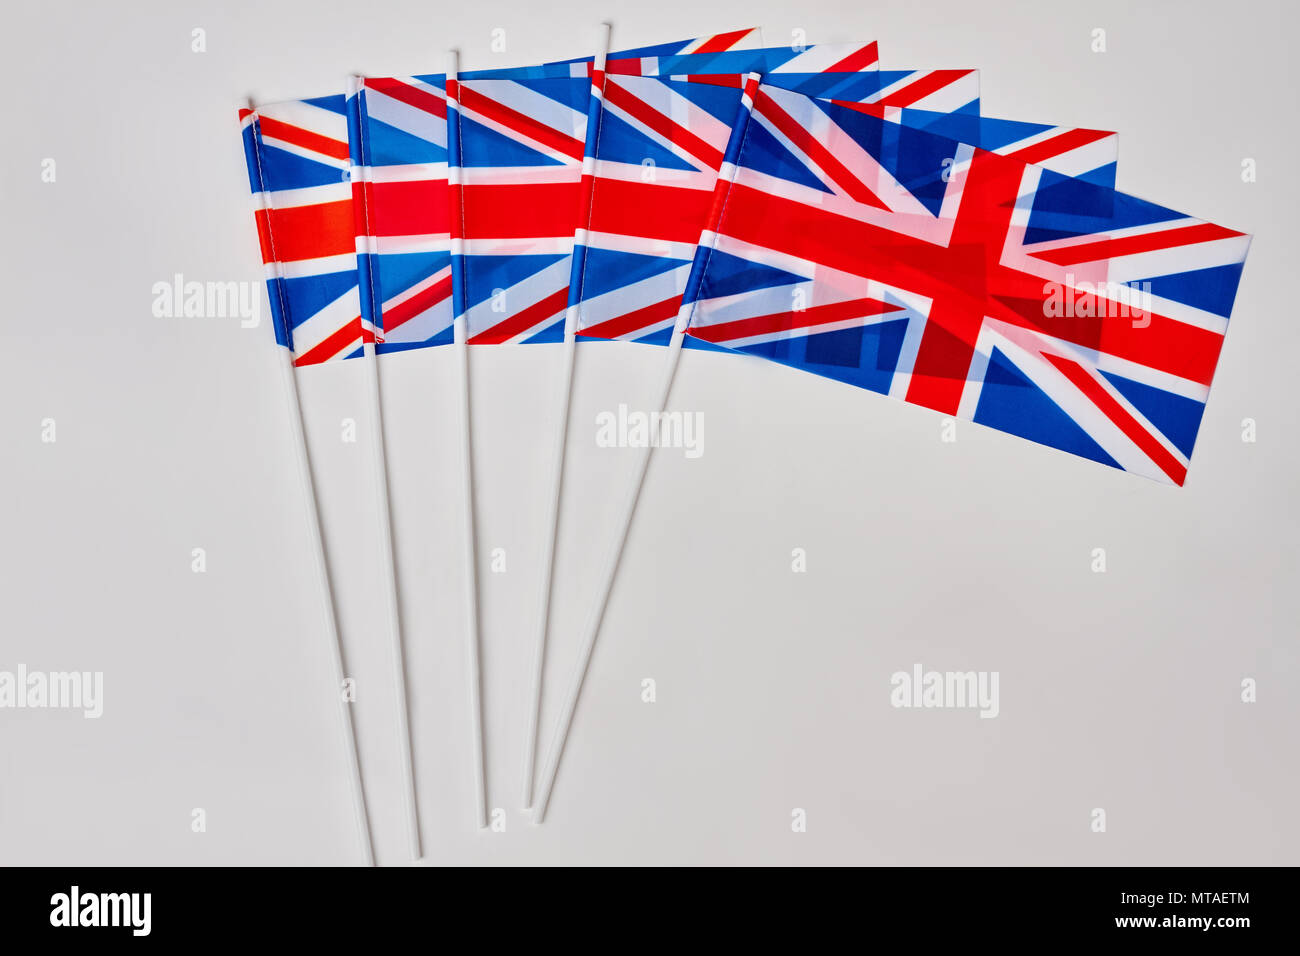 Recogida de banderas británicas. Muchas banderas de Gran Bretaña sobre fondo blanco aisladas. Foto de stock